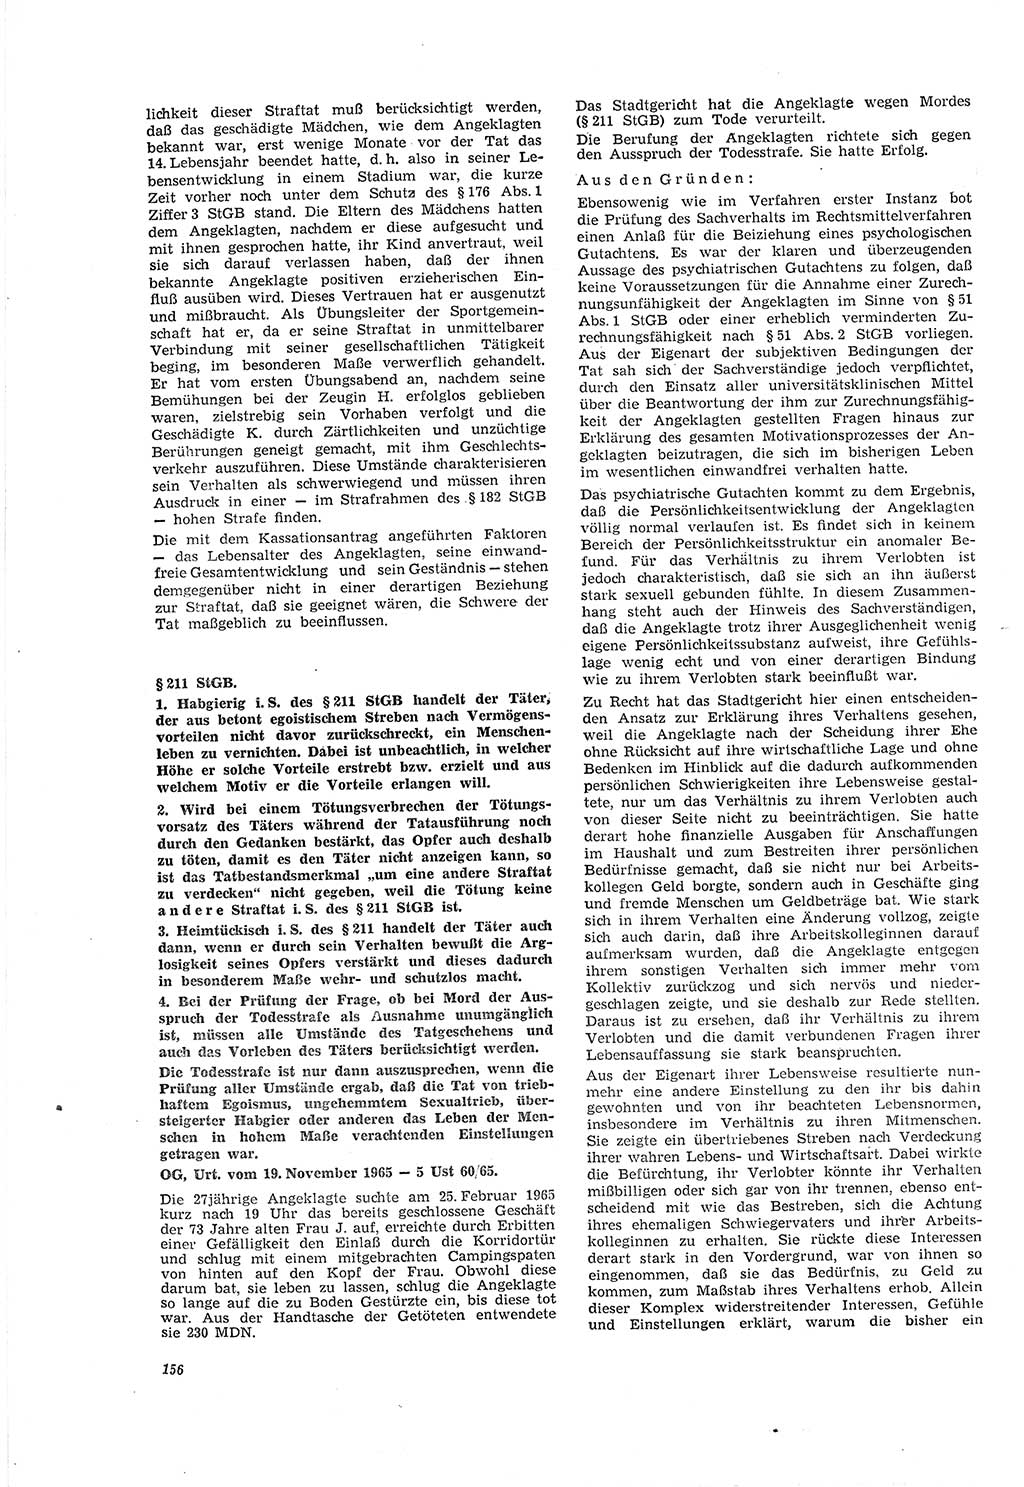 Neue Justiz (NJ), Zeitschrift für Recht und Rechtswissenschaft [Deutsche Demokratische Republik (DDR)], 20. Jahrgang 1966, Seite 156 (NJ DDR 1966, S. 156)